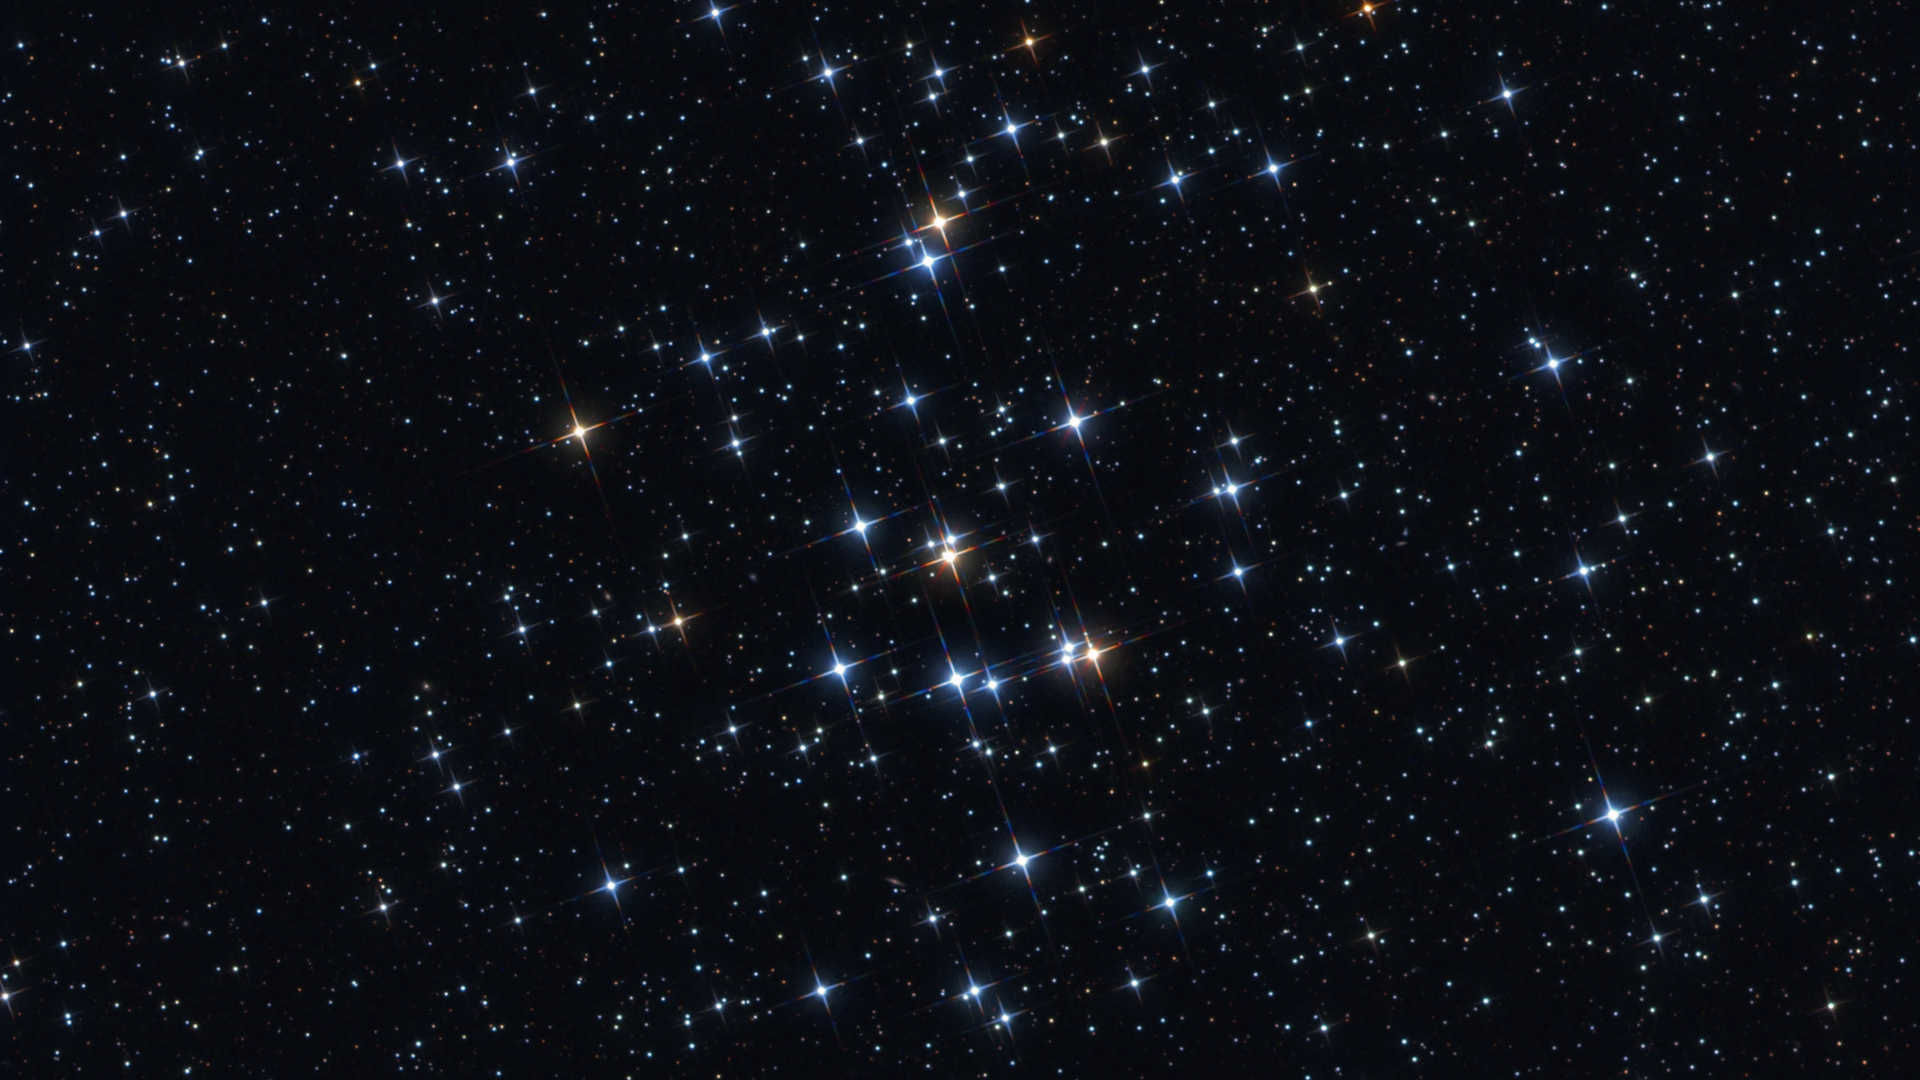 Der offene Sternhaufen M 44 steht jetzt im Frühling in seiner ganzen Pracht am Nachthimmel. Mario Weigand